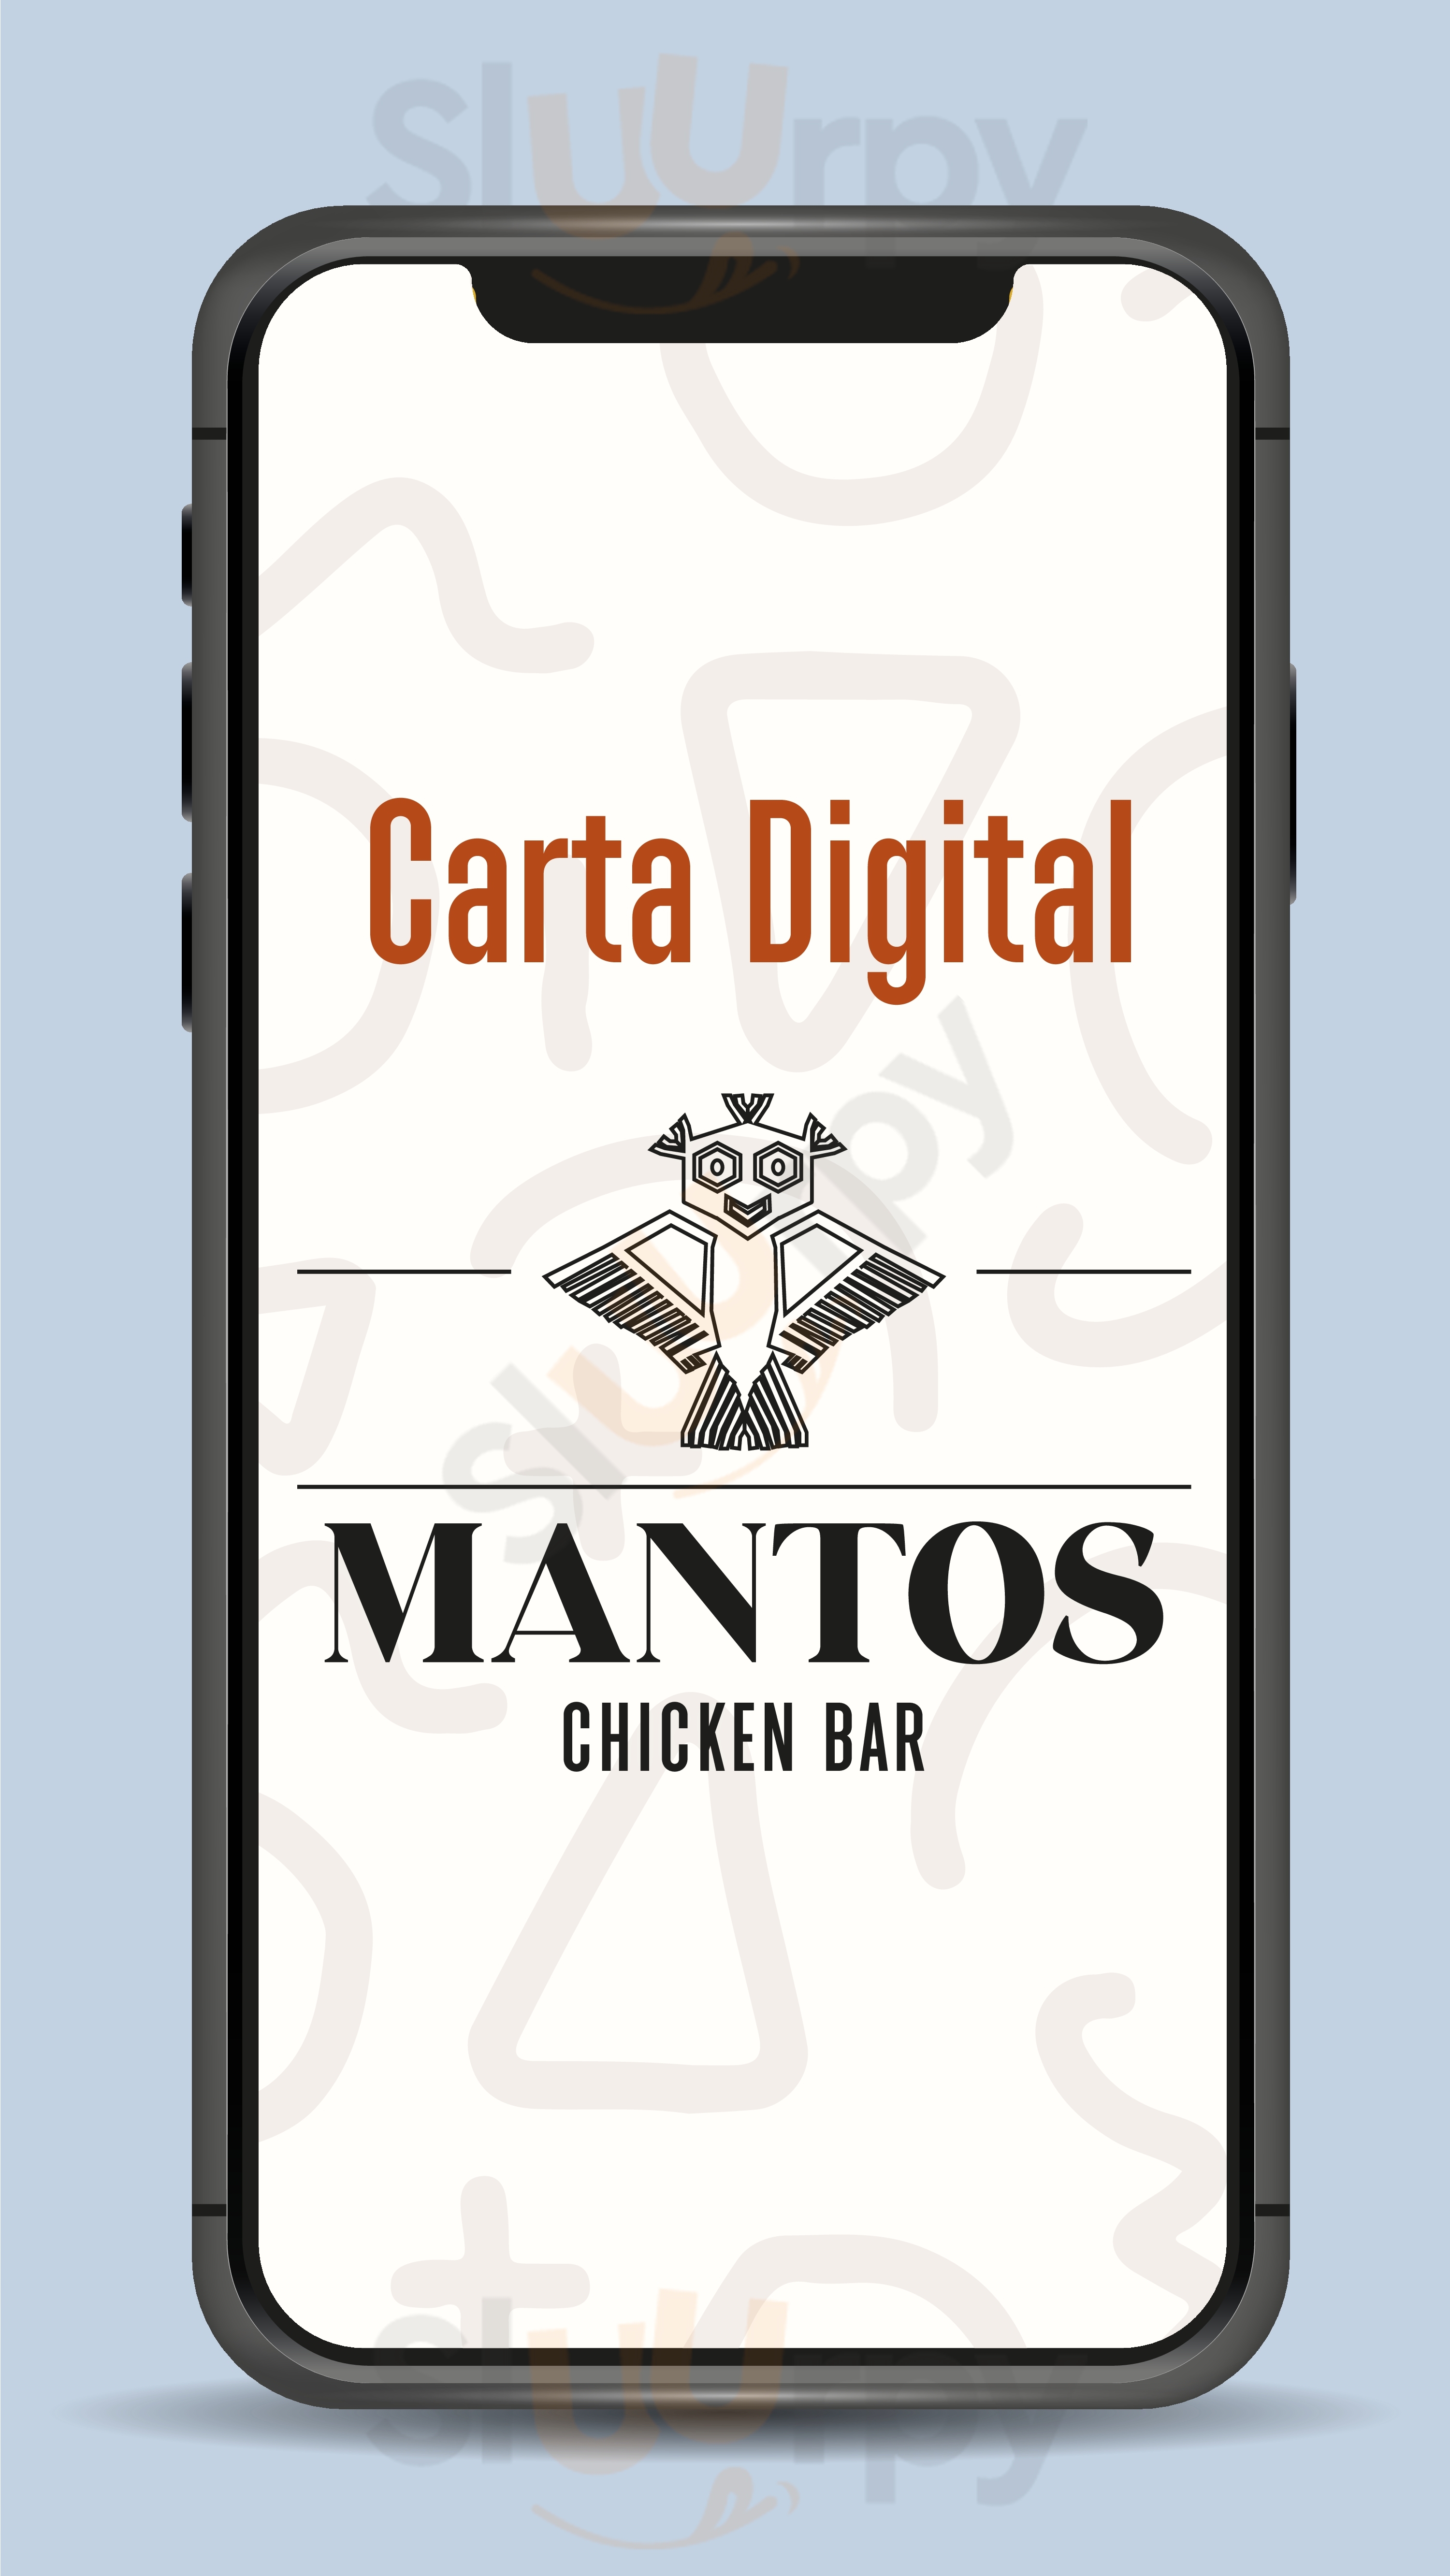 Manto's Chicken Bar Ica Menu - 1